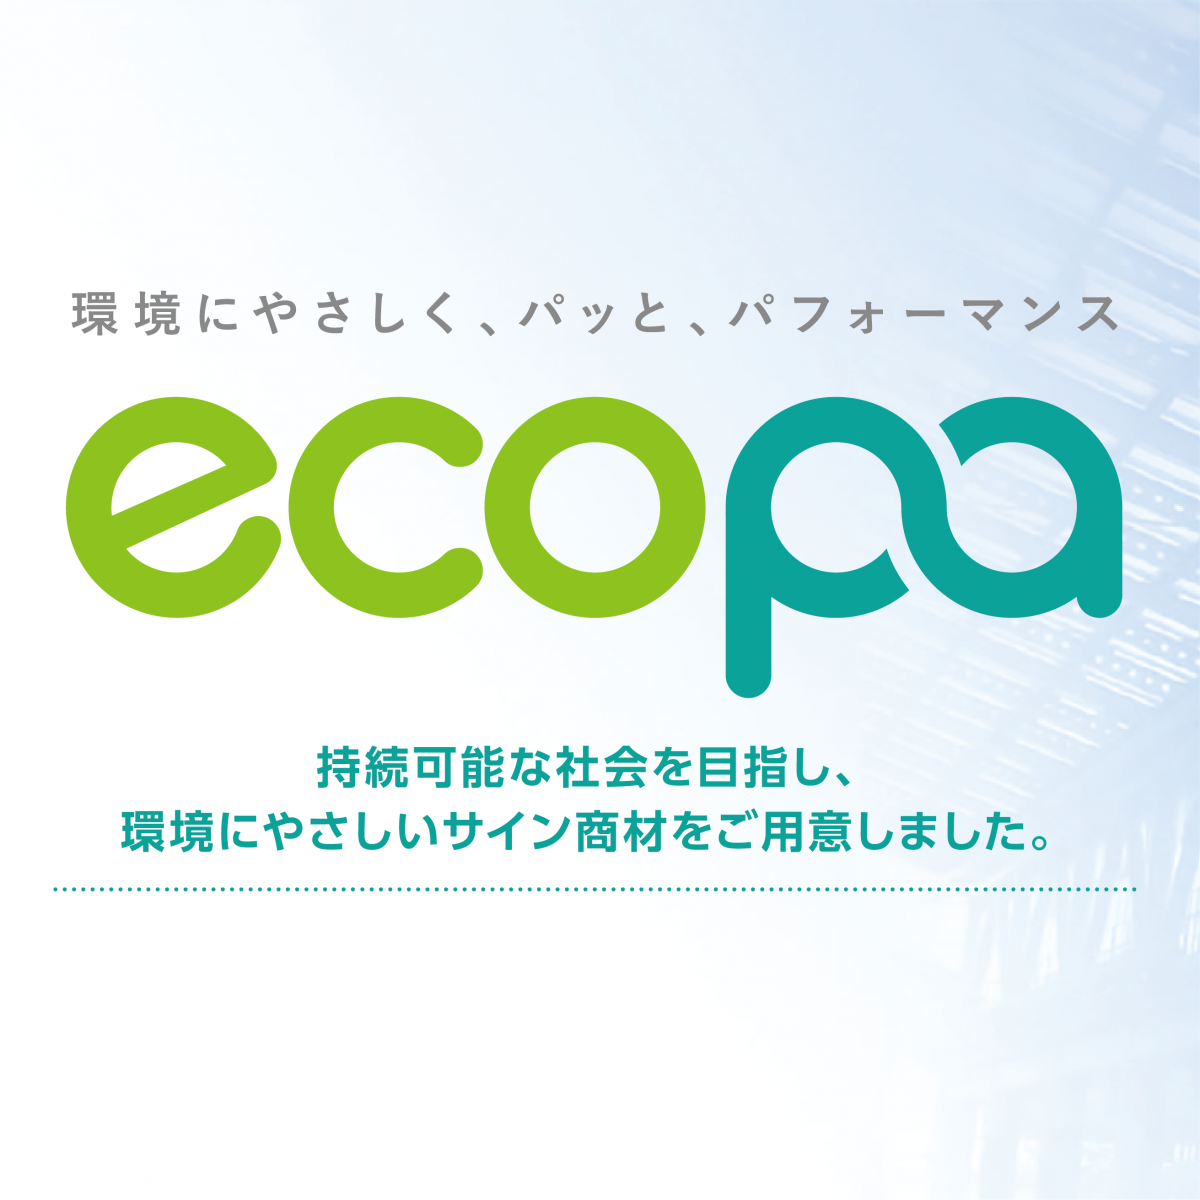 東京リスマチックの環境配慮型サイン&ディスプレイサービス 「ecopa」はじめました。